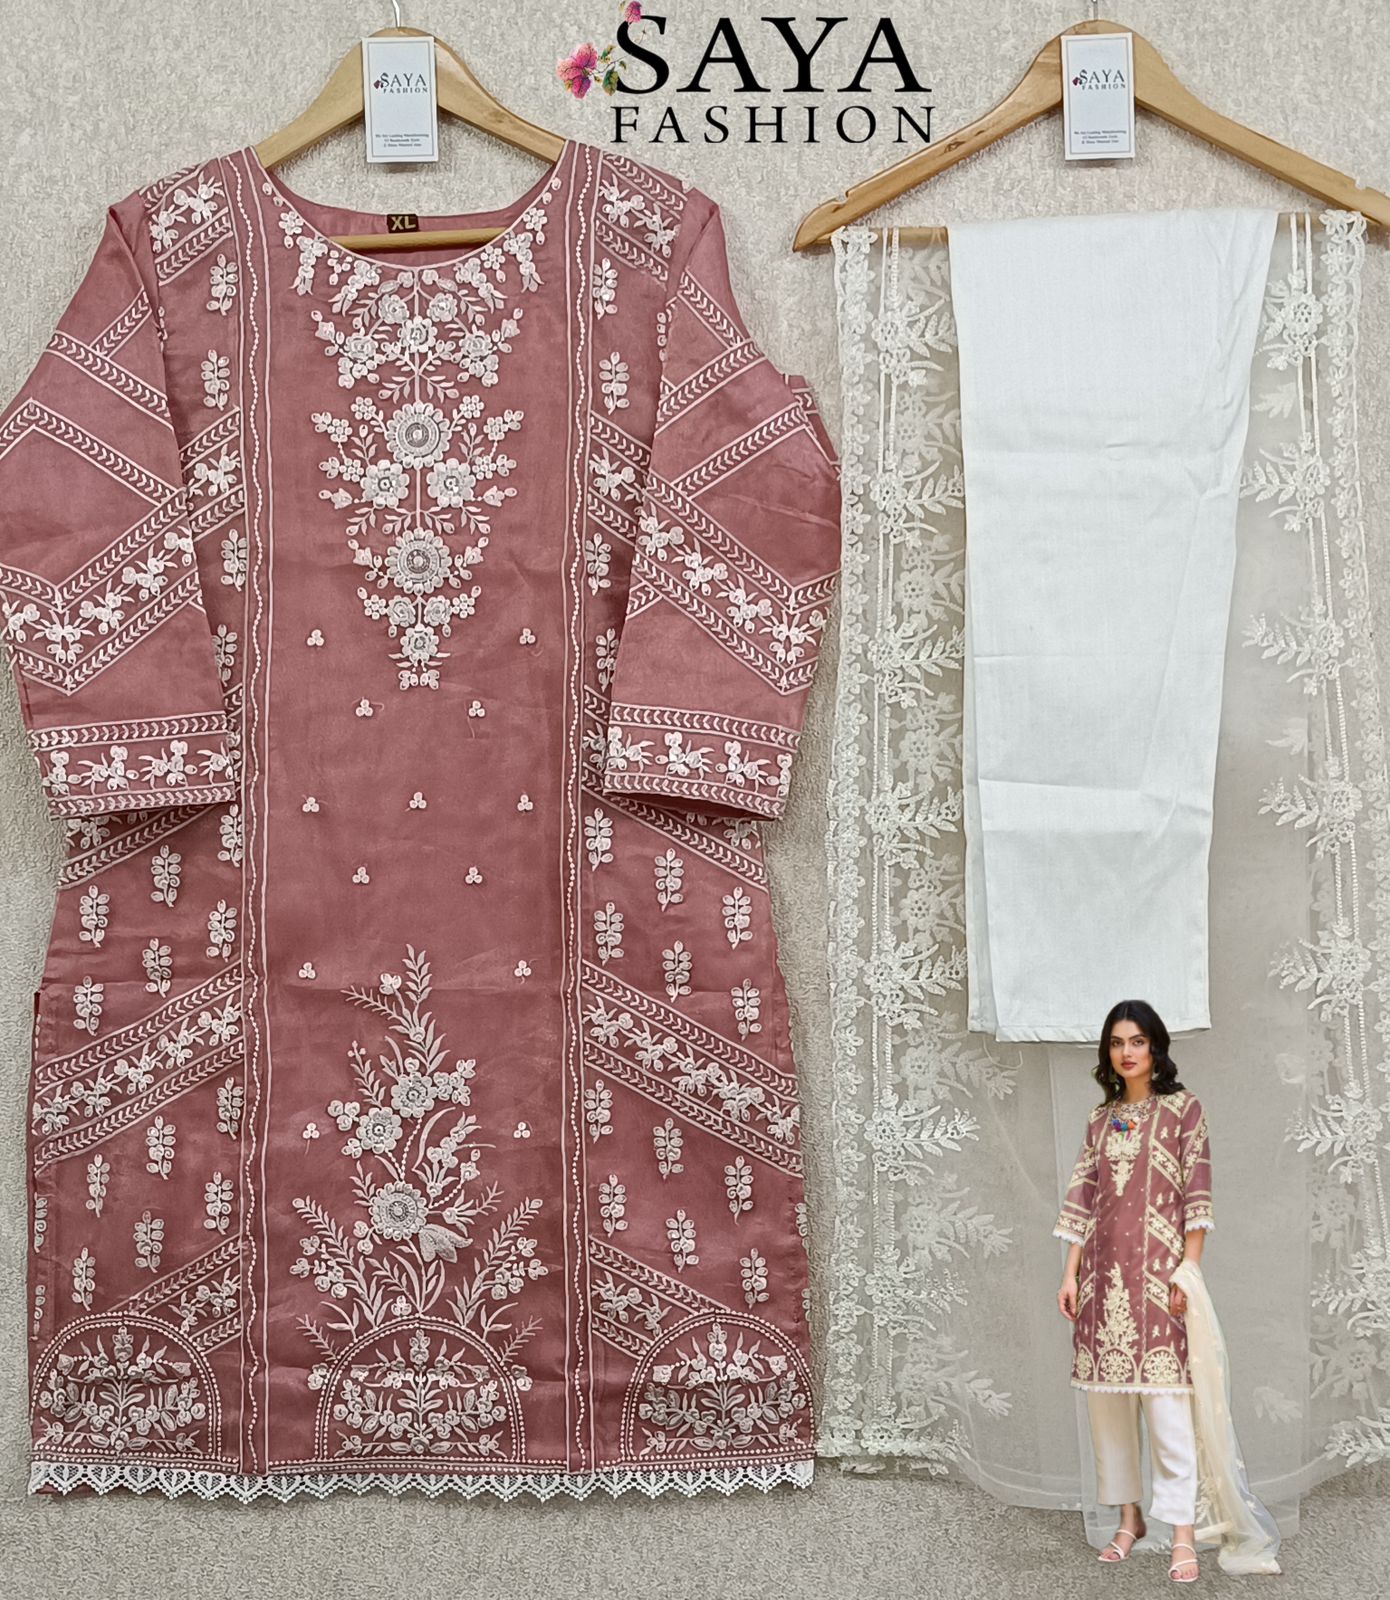 Pakistan Cotton Lawn embroidery kurti girls 8 years size 34 | eBay